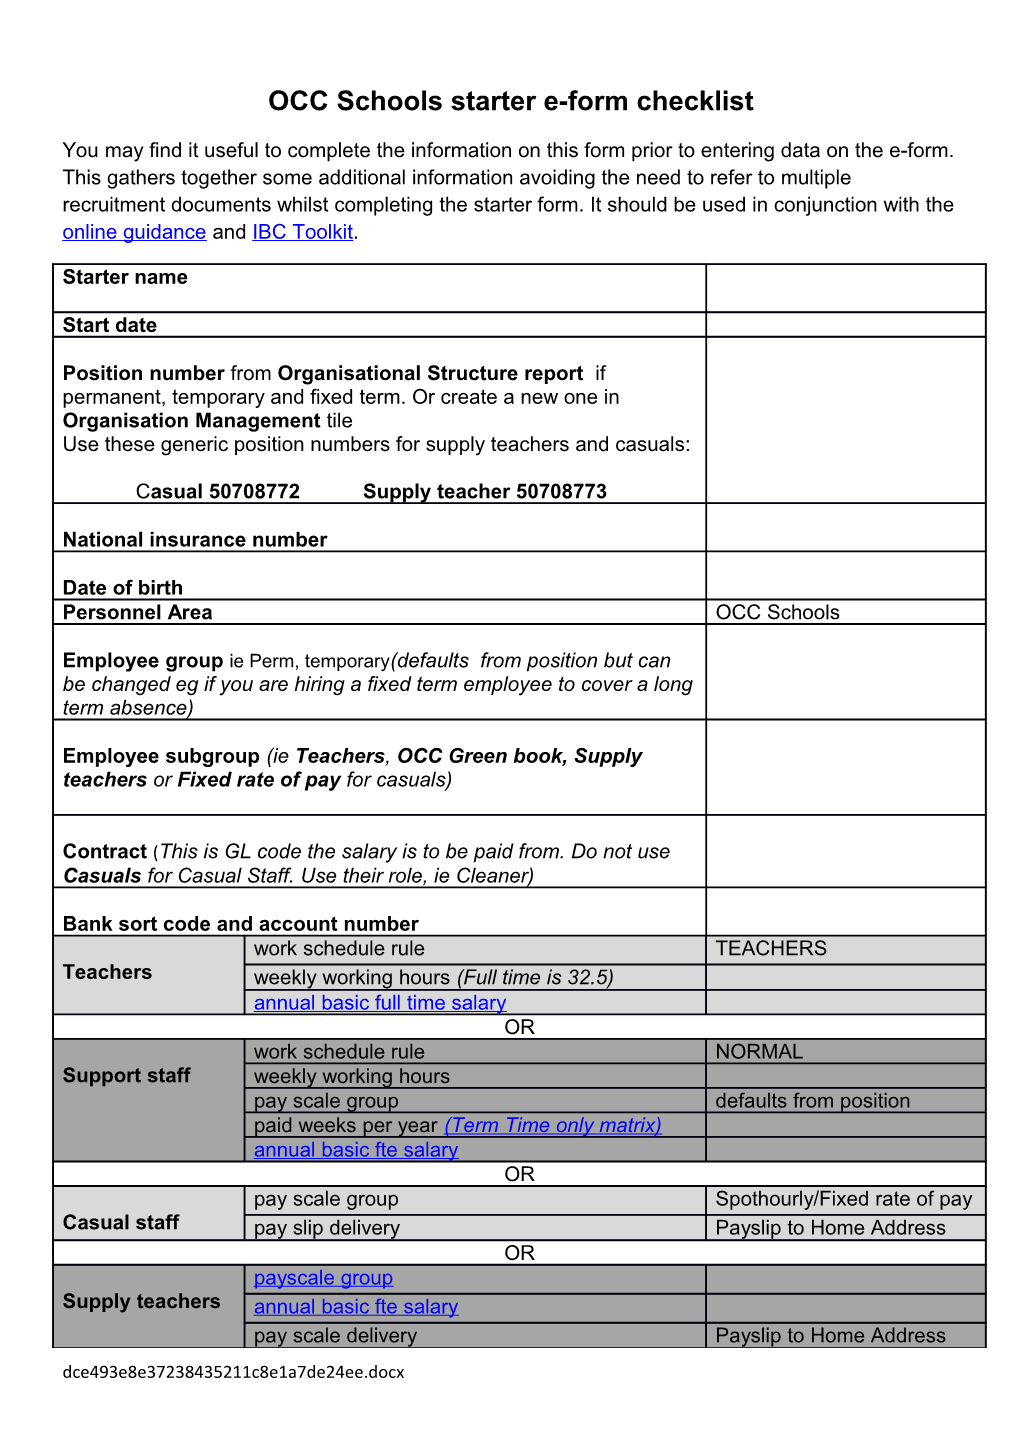 OCC Schoolsstarter E-Form Checklist